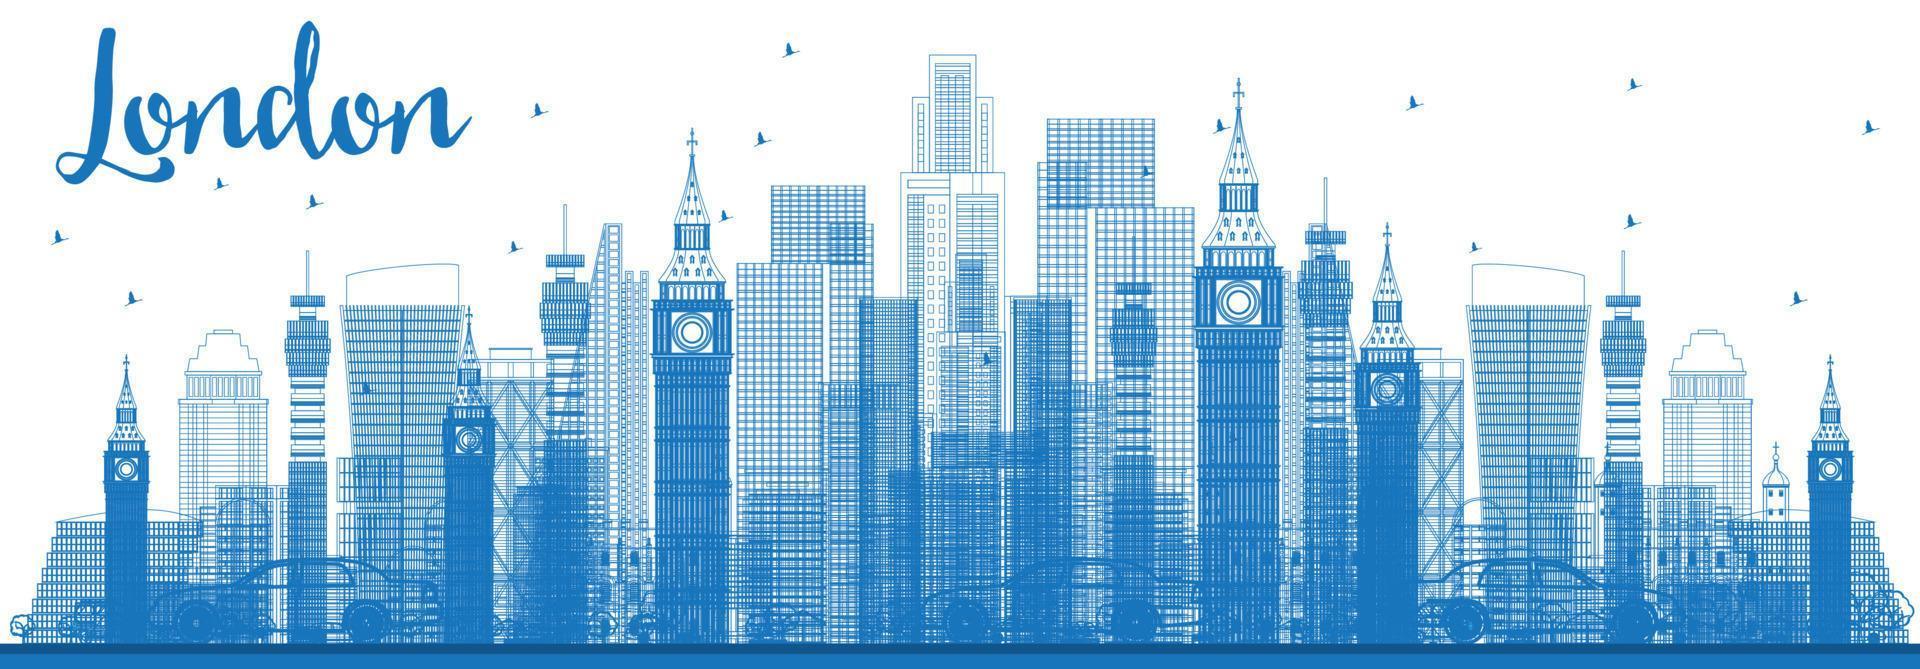 delinear el horizonte de Londres con edificios azules. vector